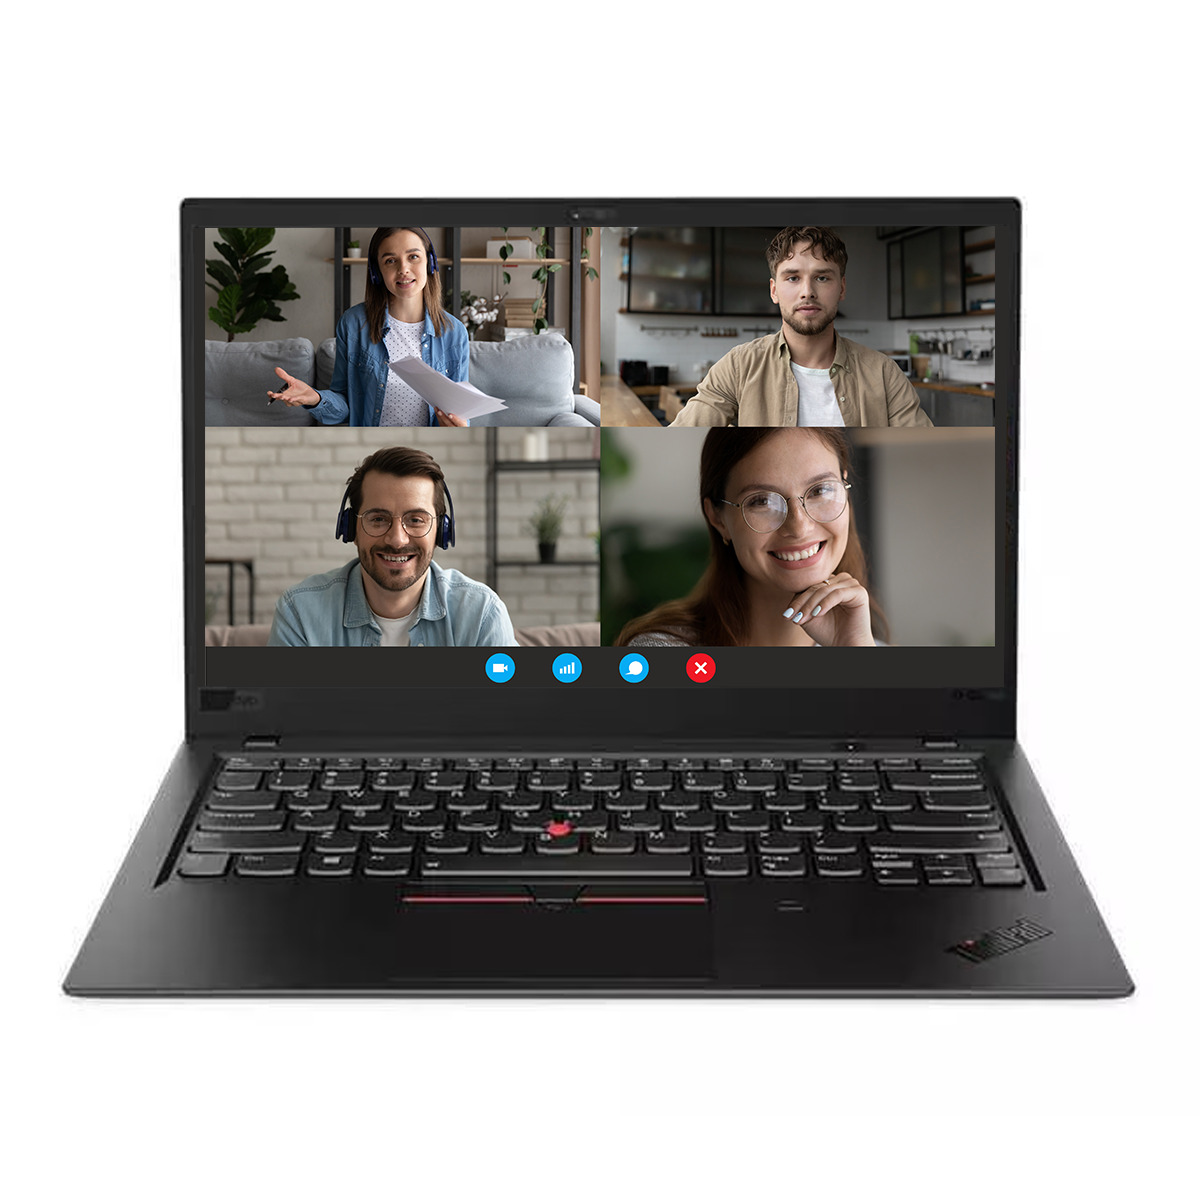 Lenovo ThinkPad X1 Carbon G6 to doskonały wybór dla każdego, kto szuka wydajnego, mobilnego i stylowego laptopa,  idealny dla: Przedsiębiorców i osób często podróżujących służbowo. Użytkowników, którzy potrzebują wydajnego i mobilnego urządzenia do pracy. Studentów i uczniów szukających laptopa do nauki i rozrywki.